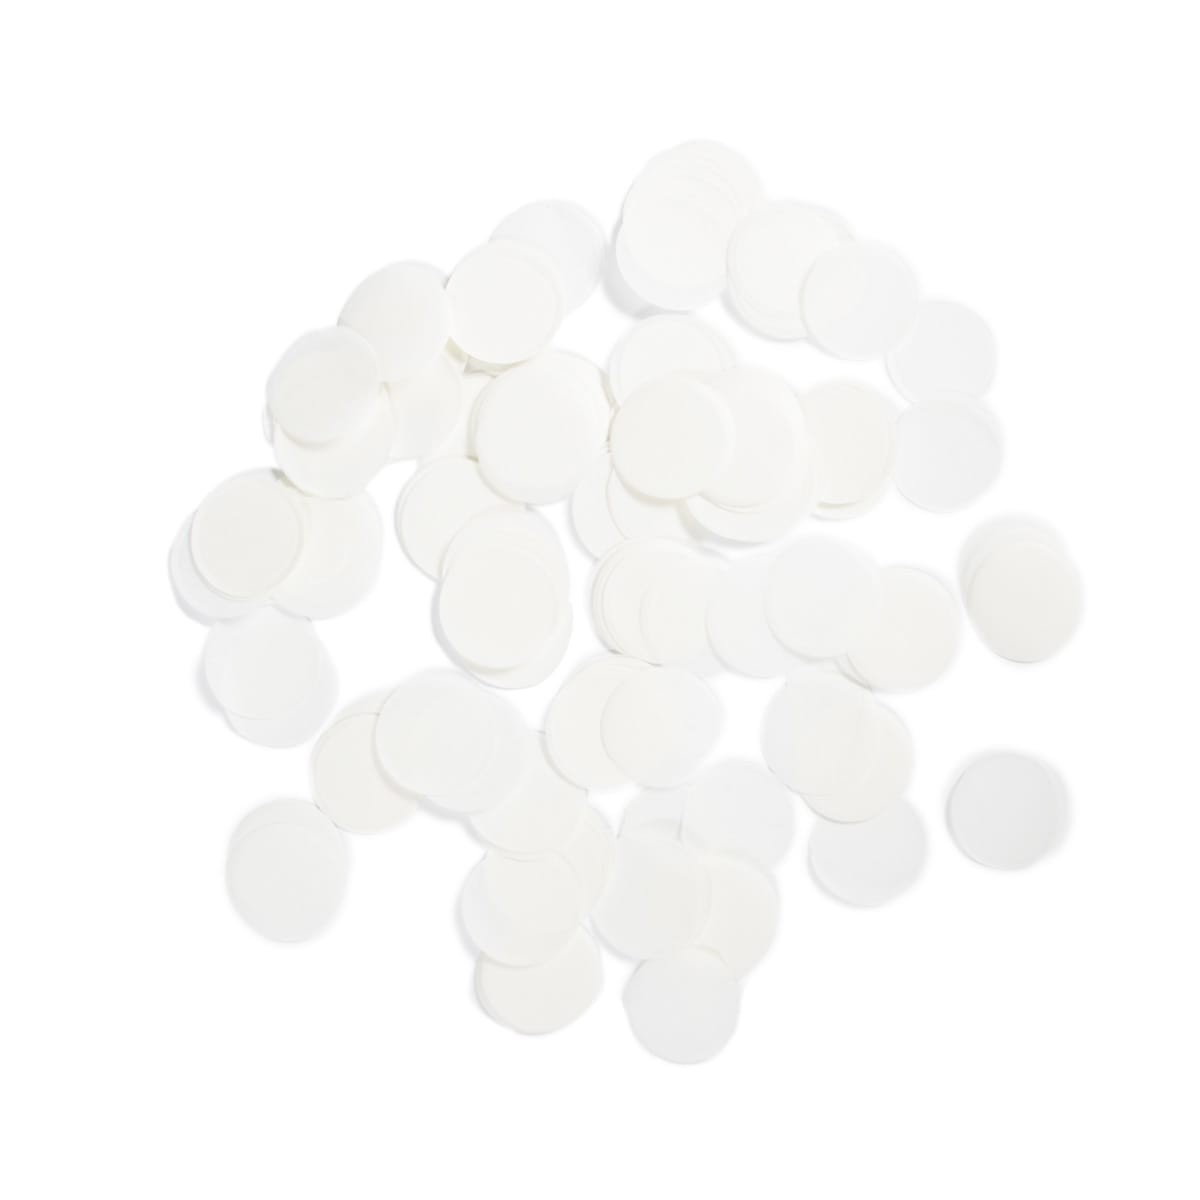 White confetti